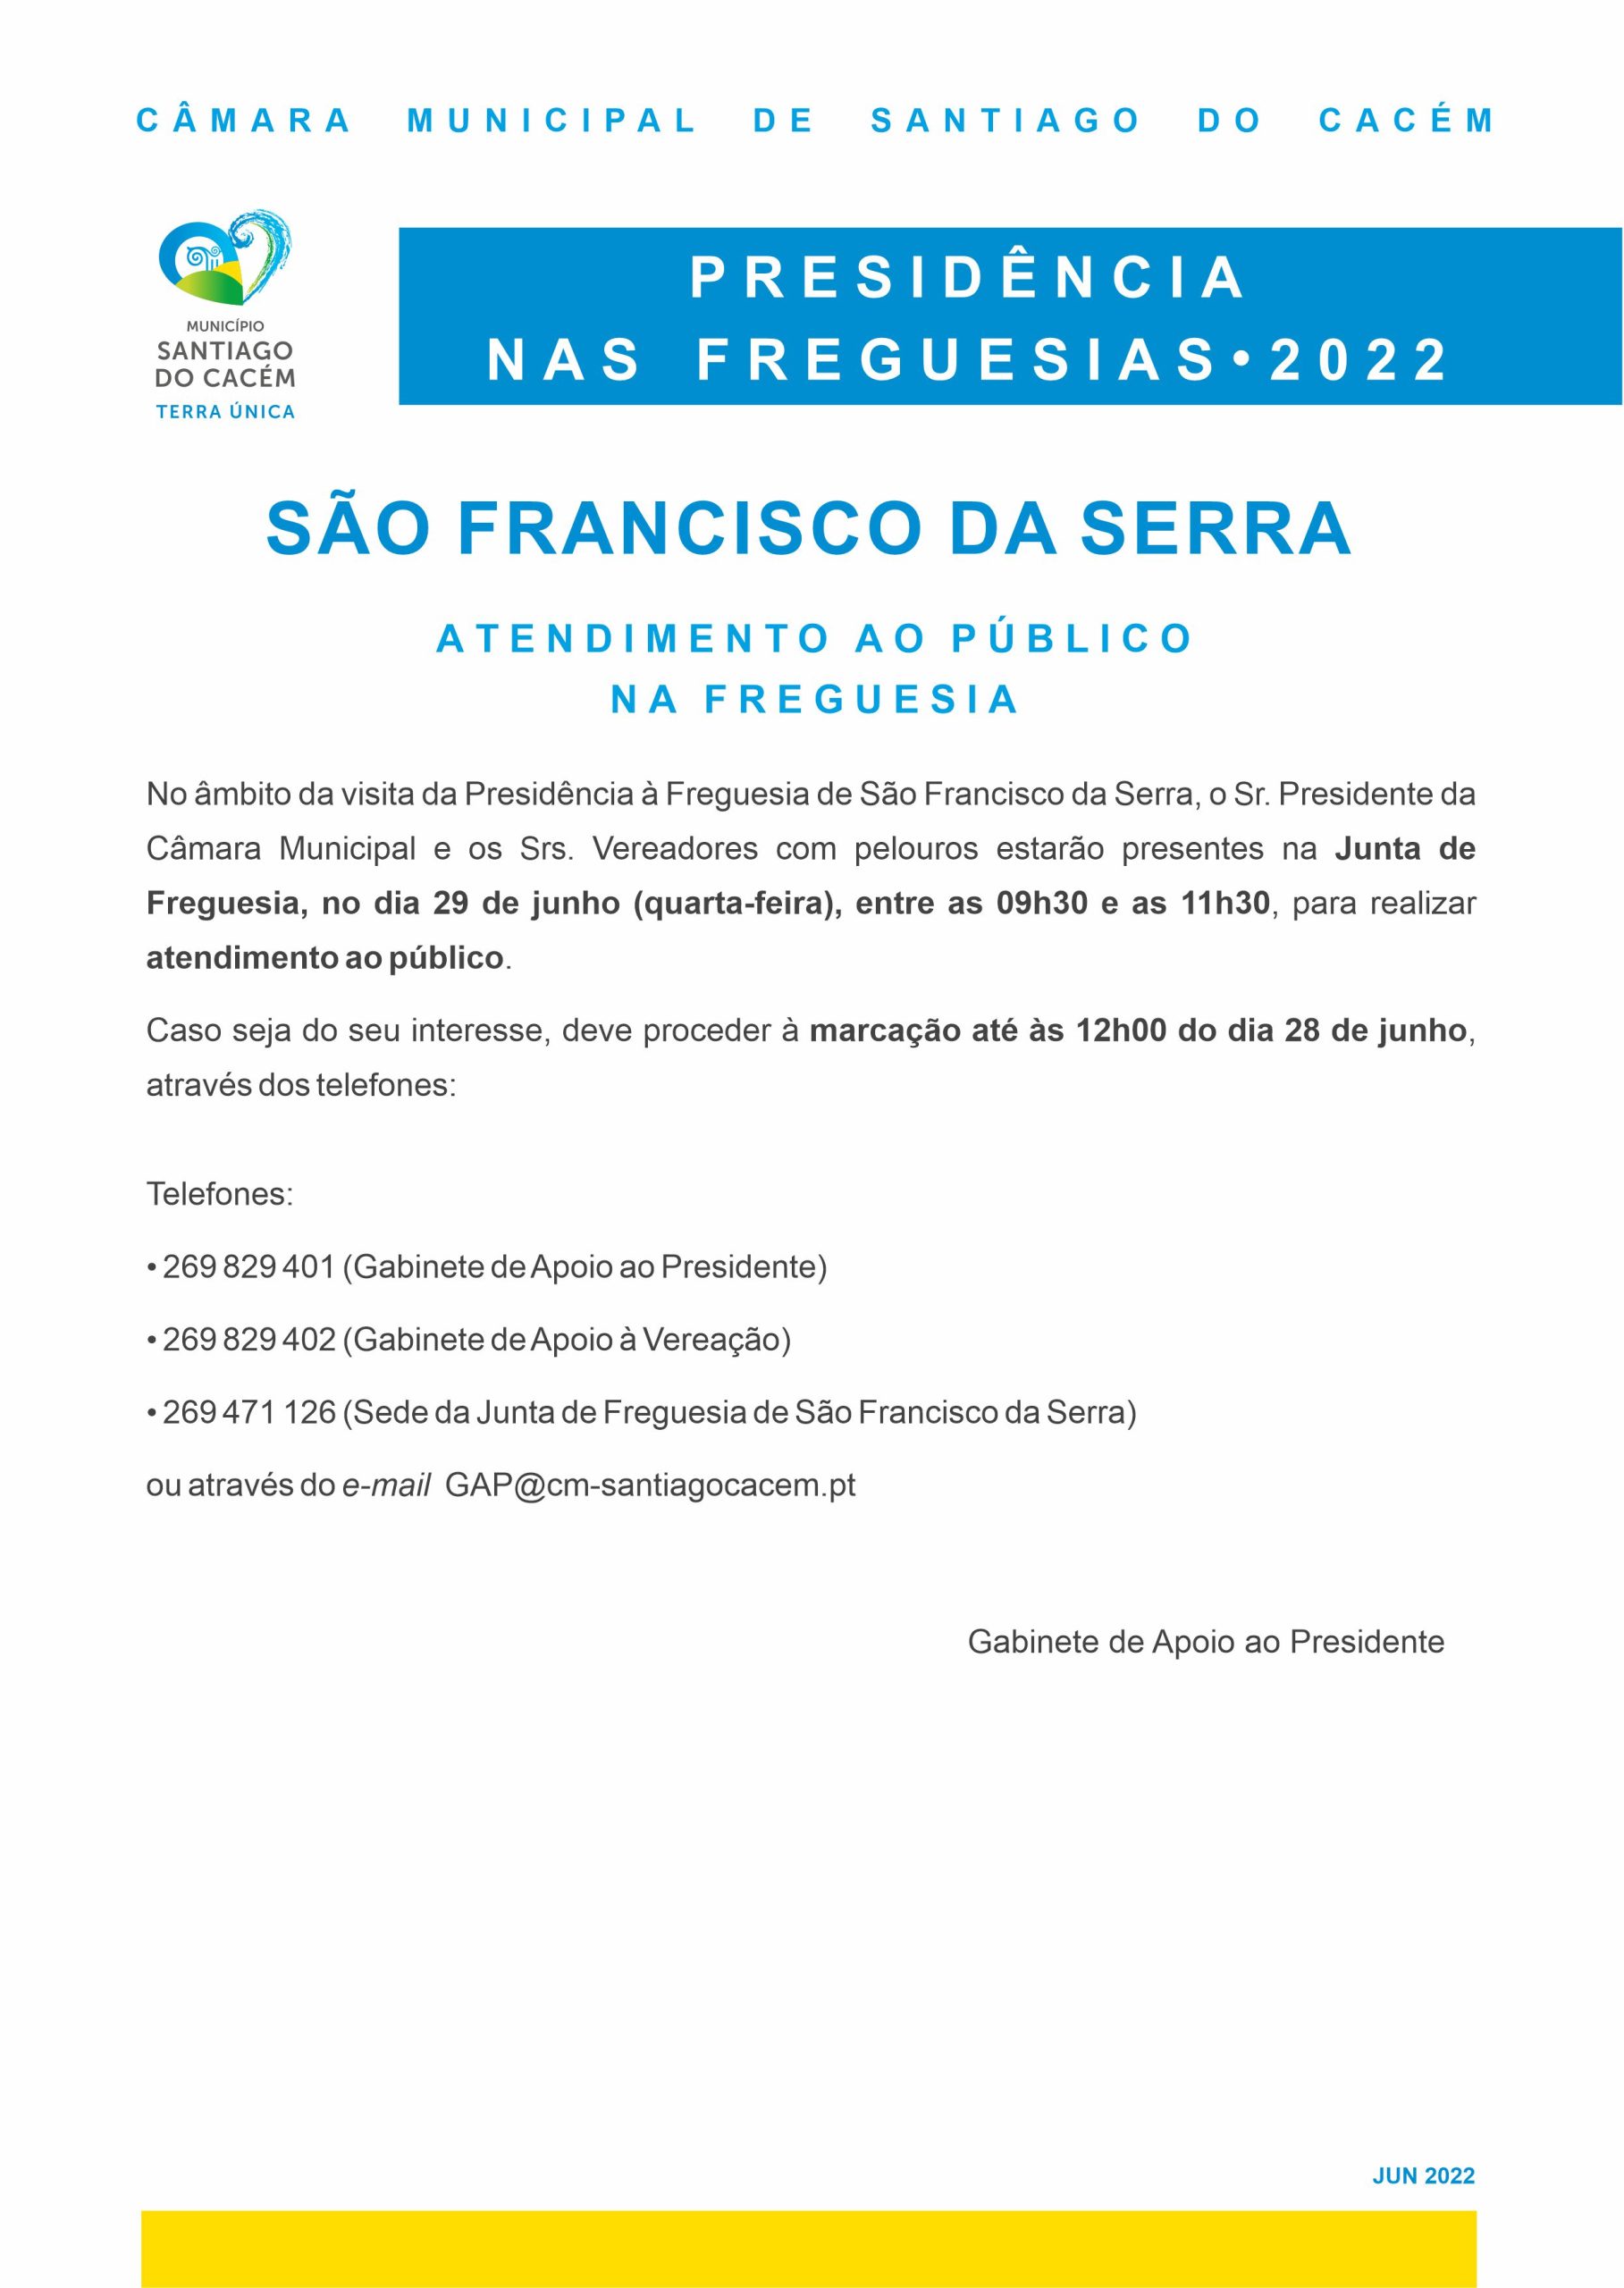 Presidência nas Freguesias - São Francisco da Serra